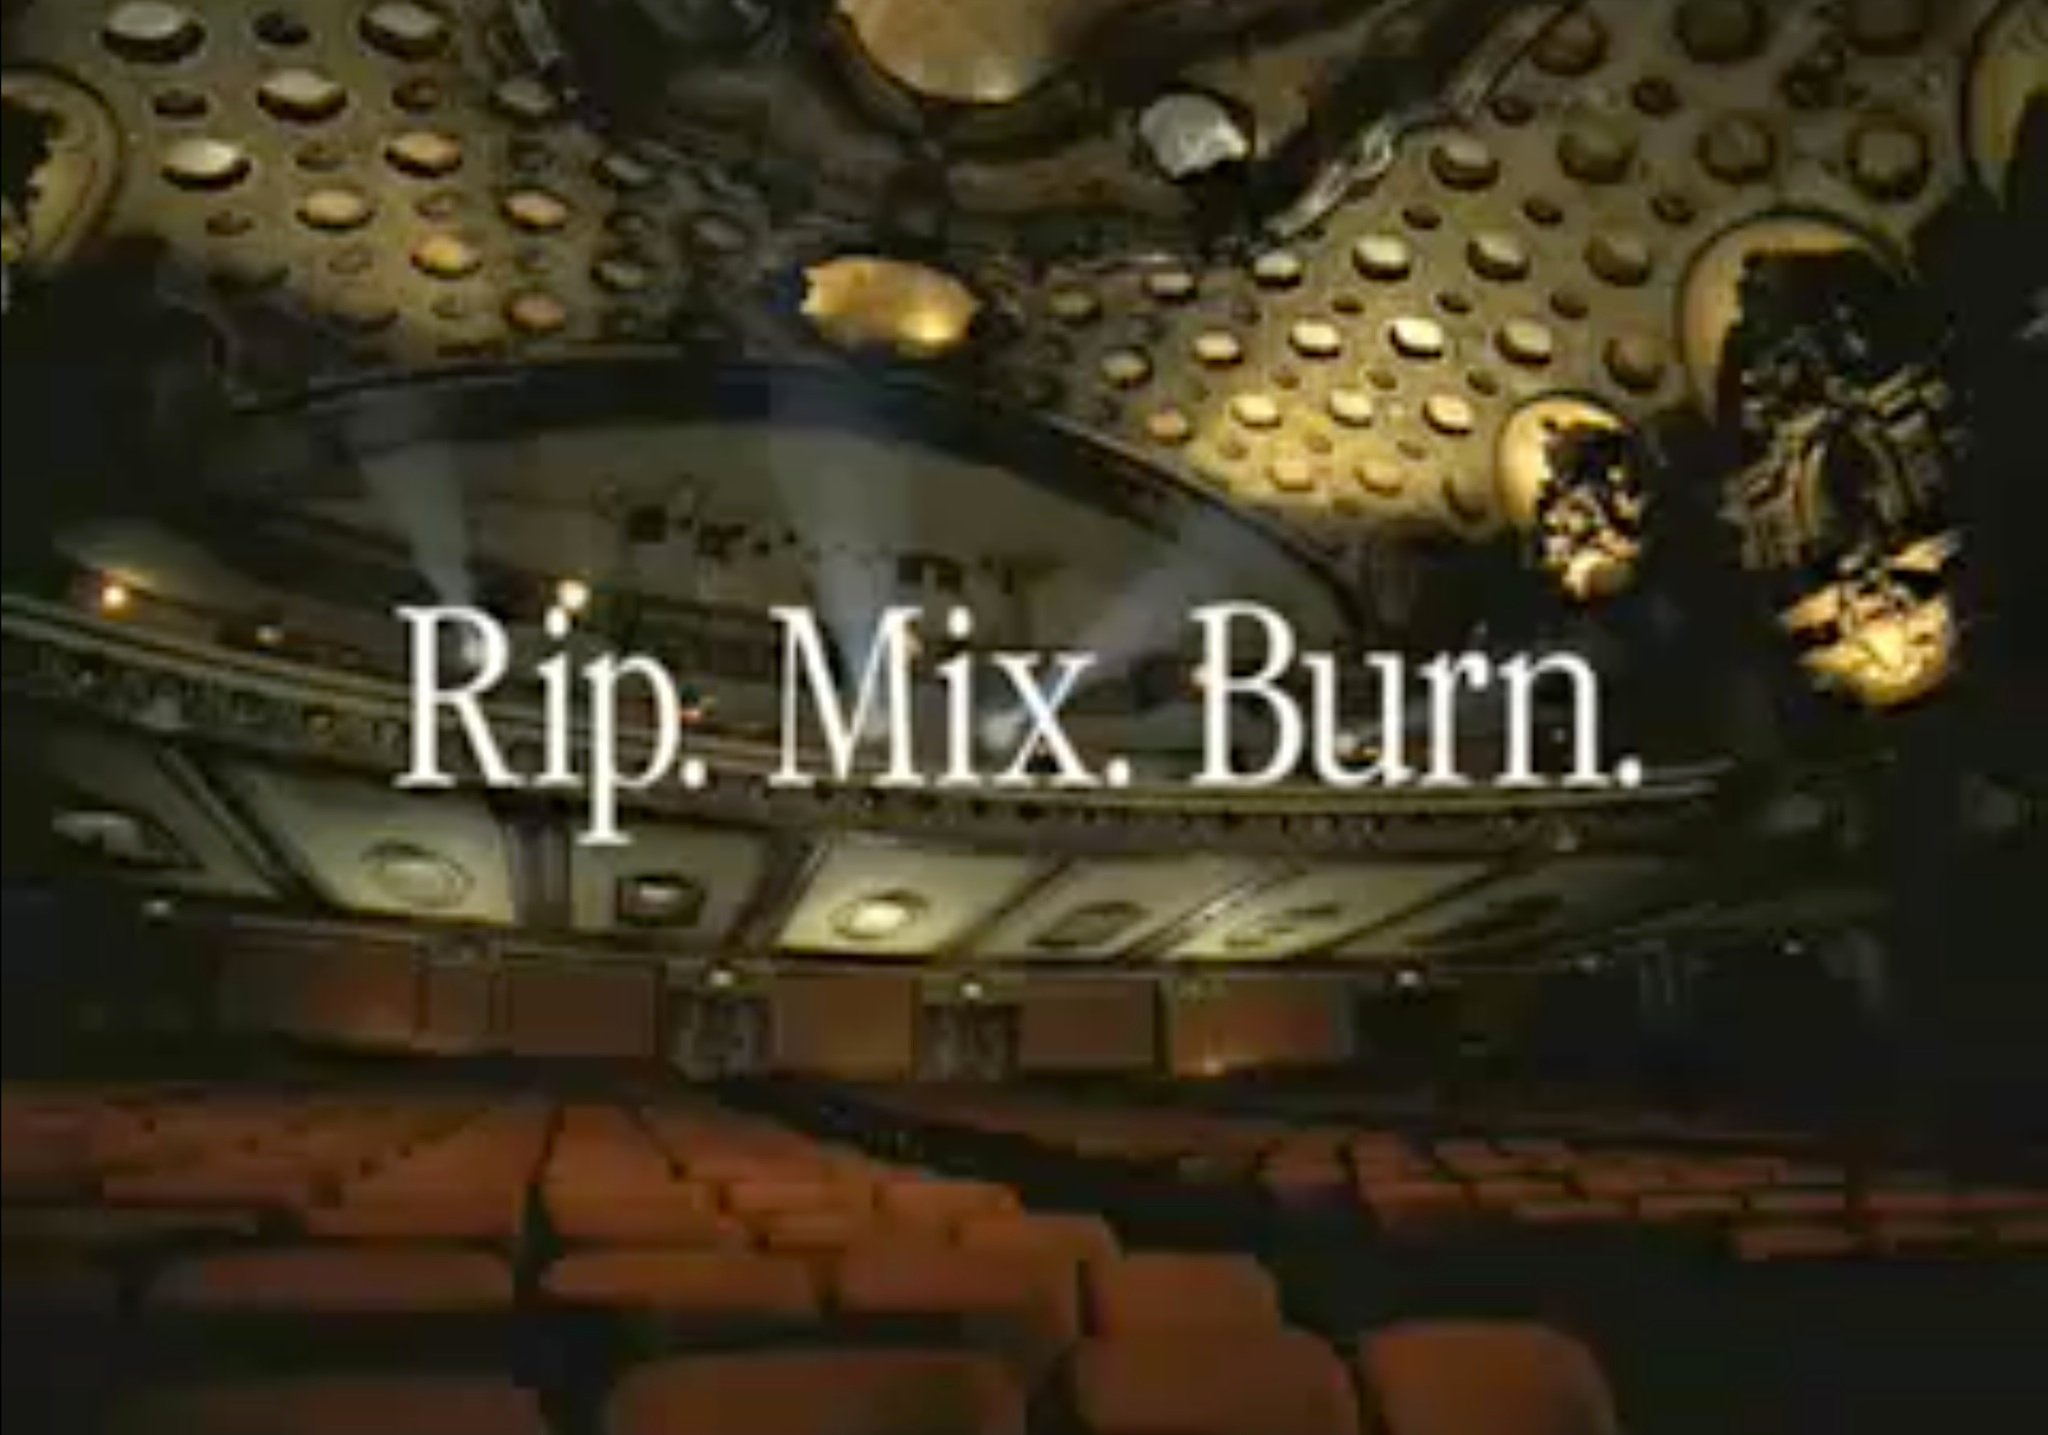 Rip. Mix. Burn.